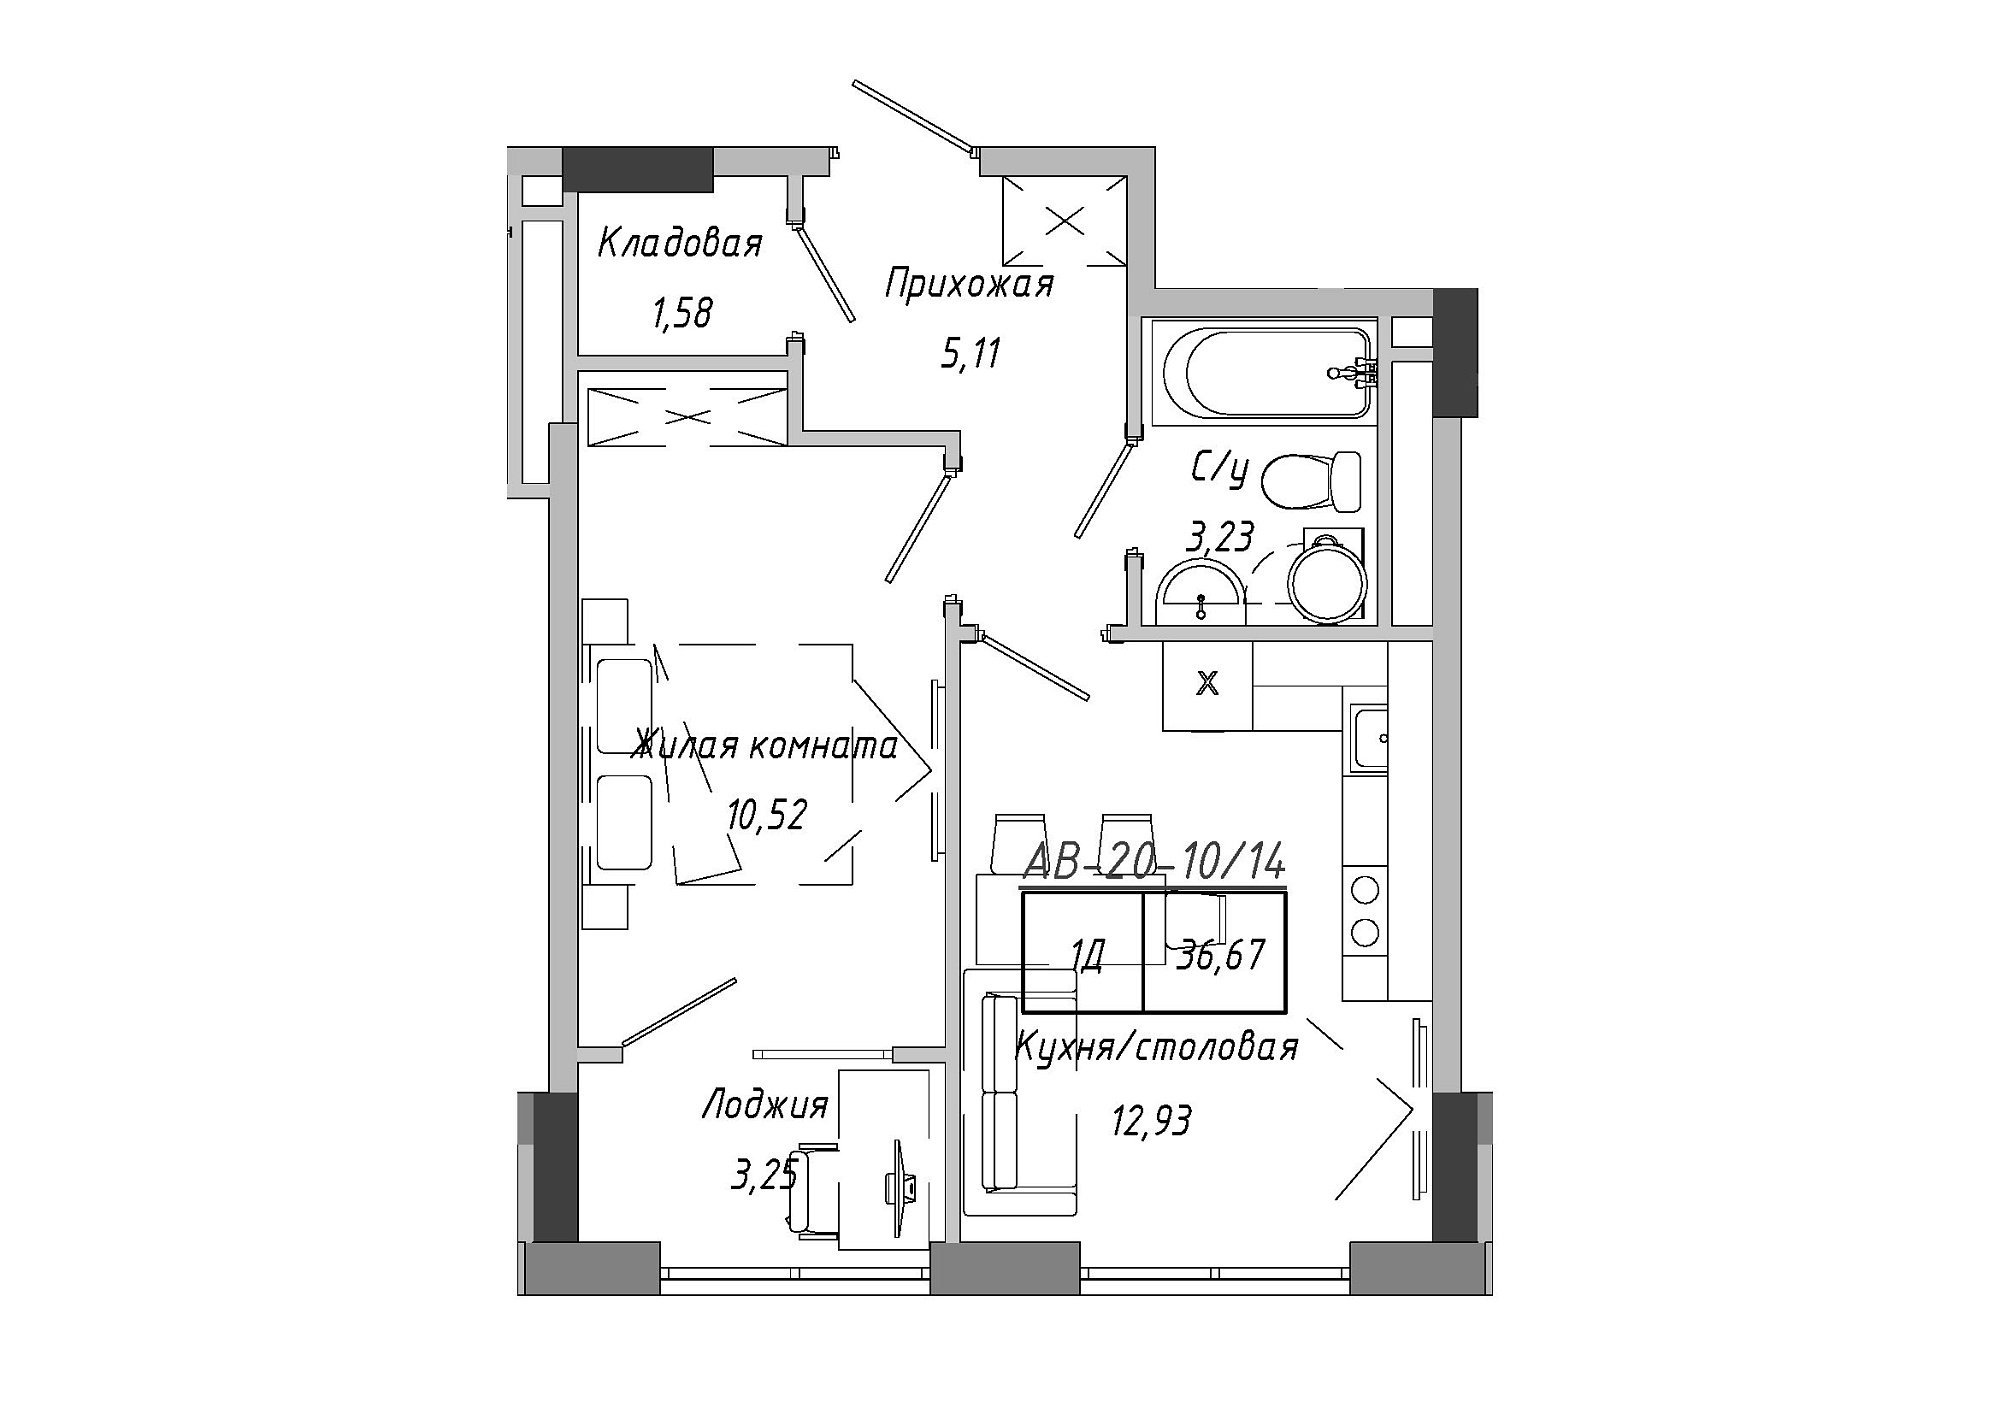 Планировка 1-к квартира площей 36.96м2, AB-20-10/00014.